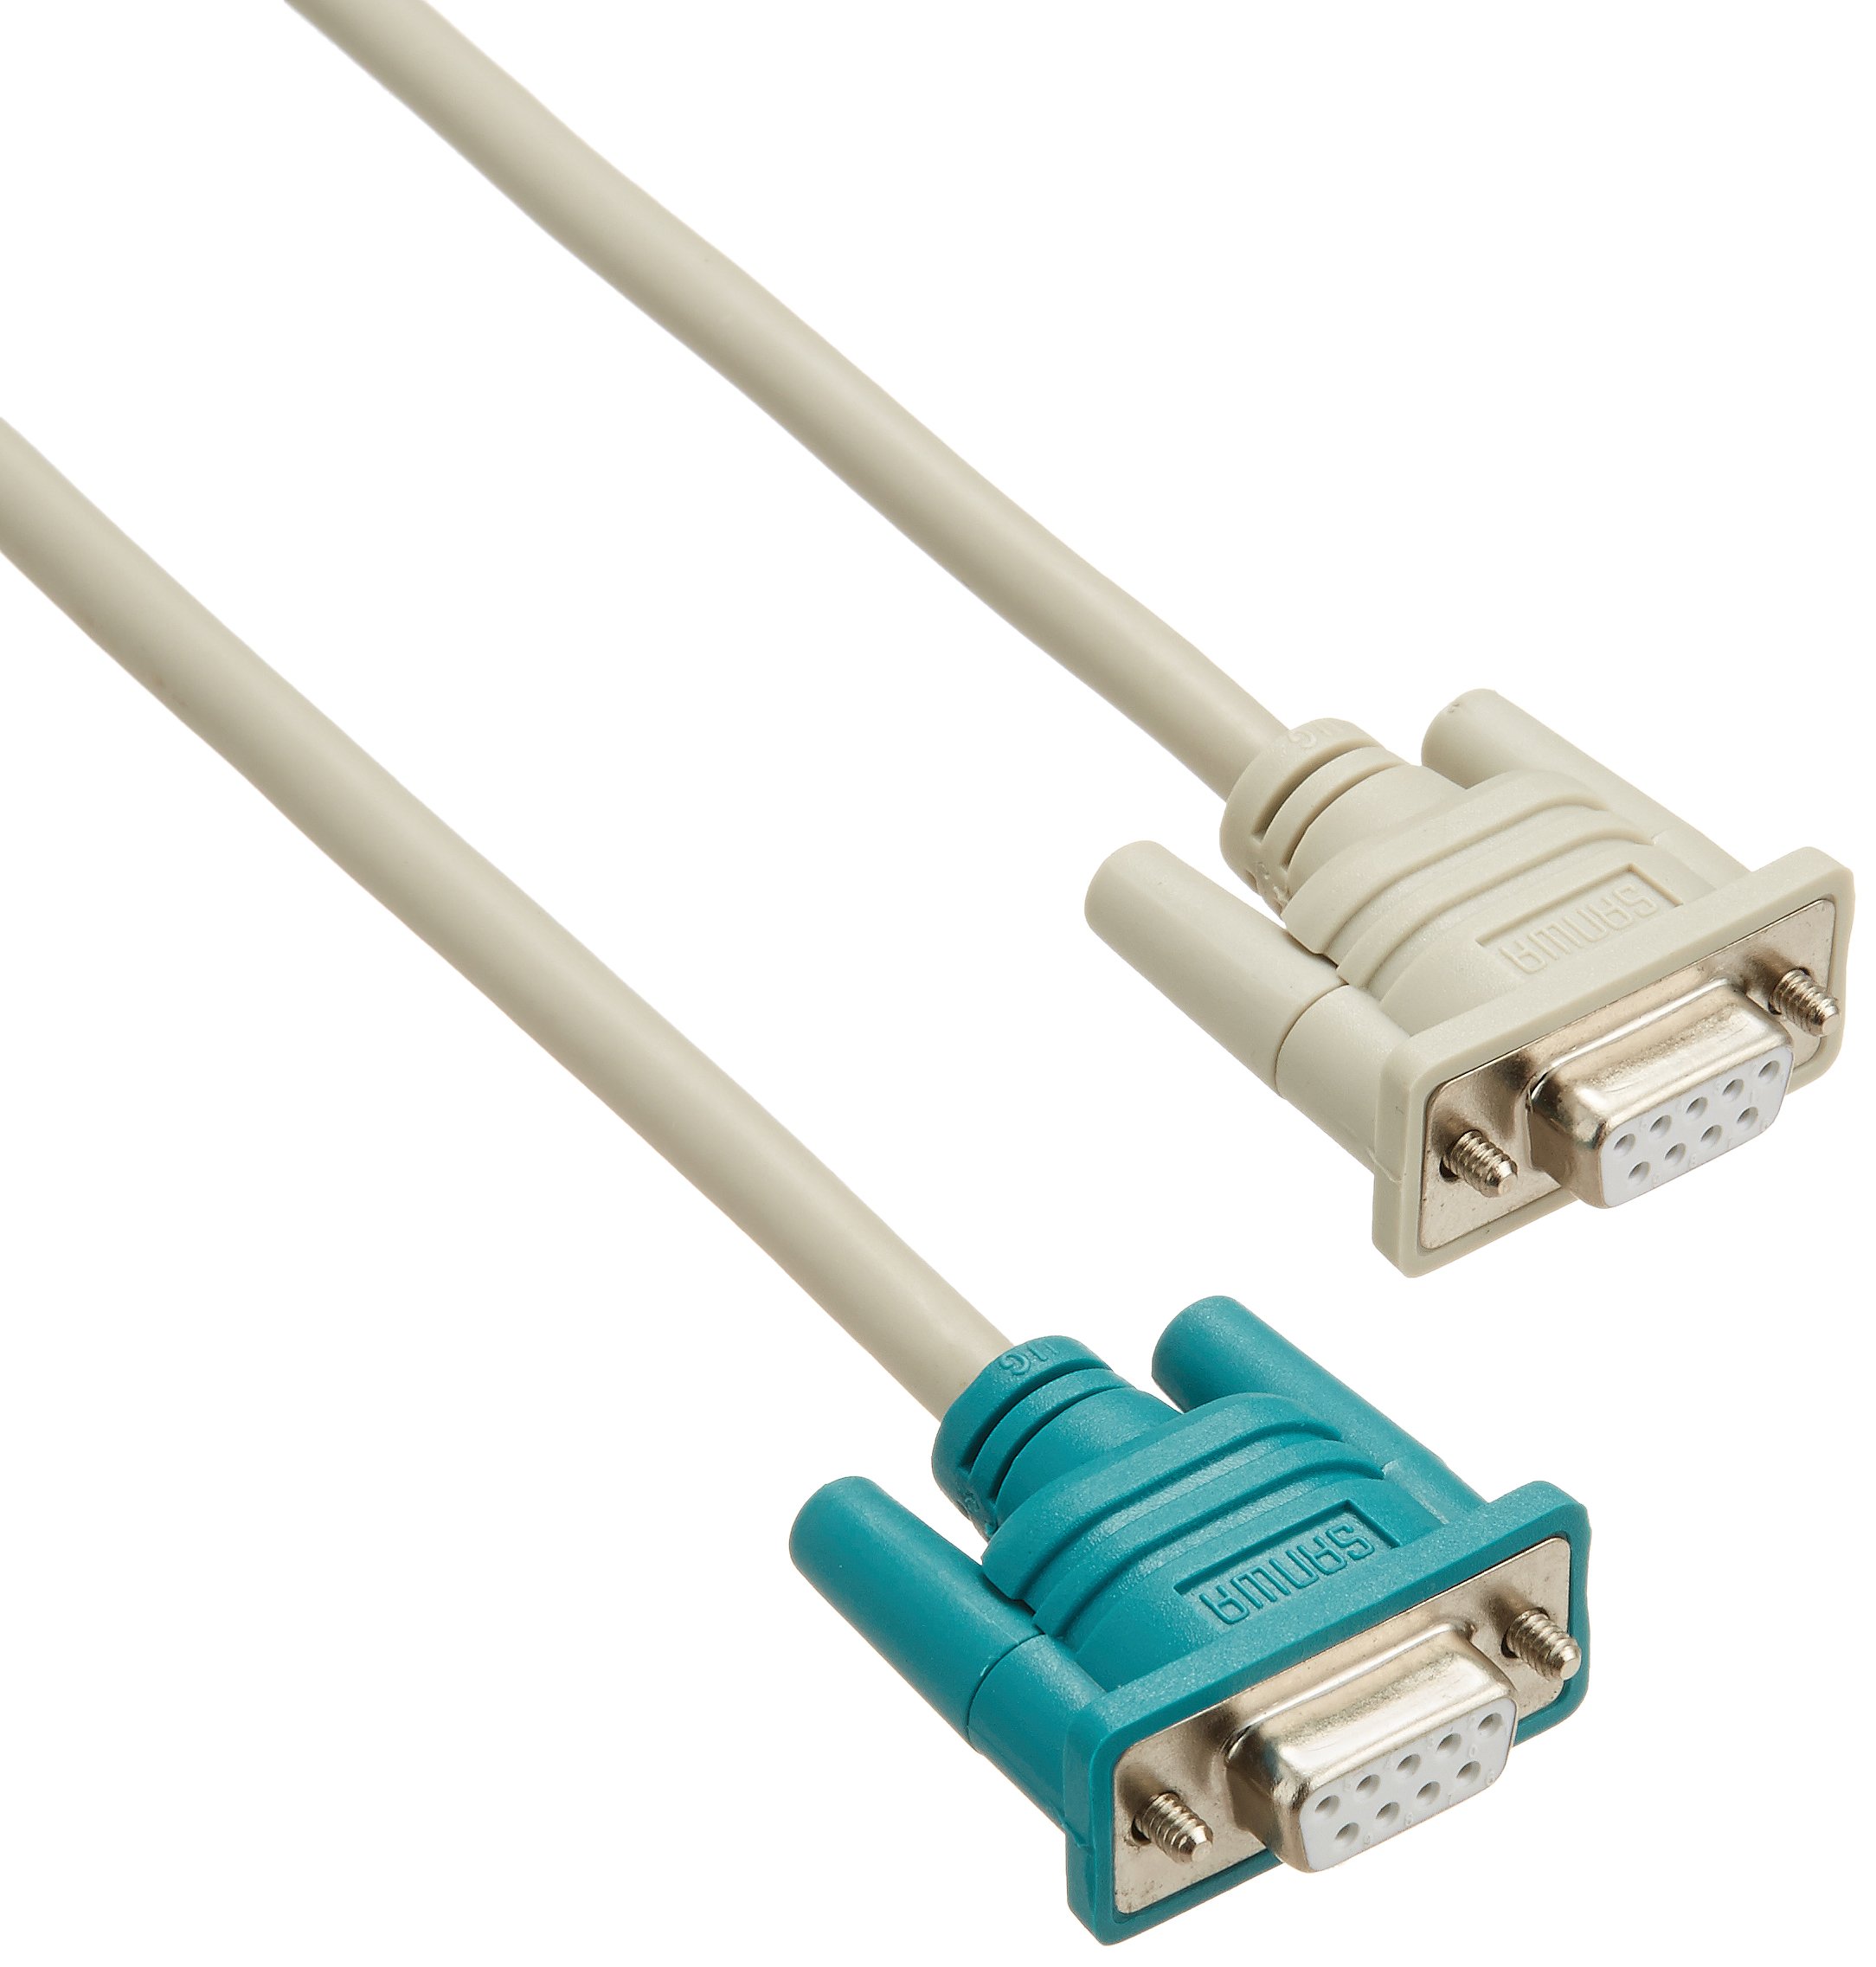 DOS/Vパソコンとモデム・TA(ターミナルアダプタ)等の周辺機器(DCE)、または切替器(SW-CP21SP等)を接続するケーブルです。 ※TAの接続にはケーブル長が影響しますので、2m以内のケーブルをご使用ください。 ケーブル長:1m コネクタ形状:D-sub9pinメスインチネジ(4-40)- D-sub9pinメスインチネジ(4-40) ケーブル直径:6mm 結線:ストレート全結線